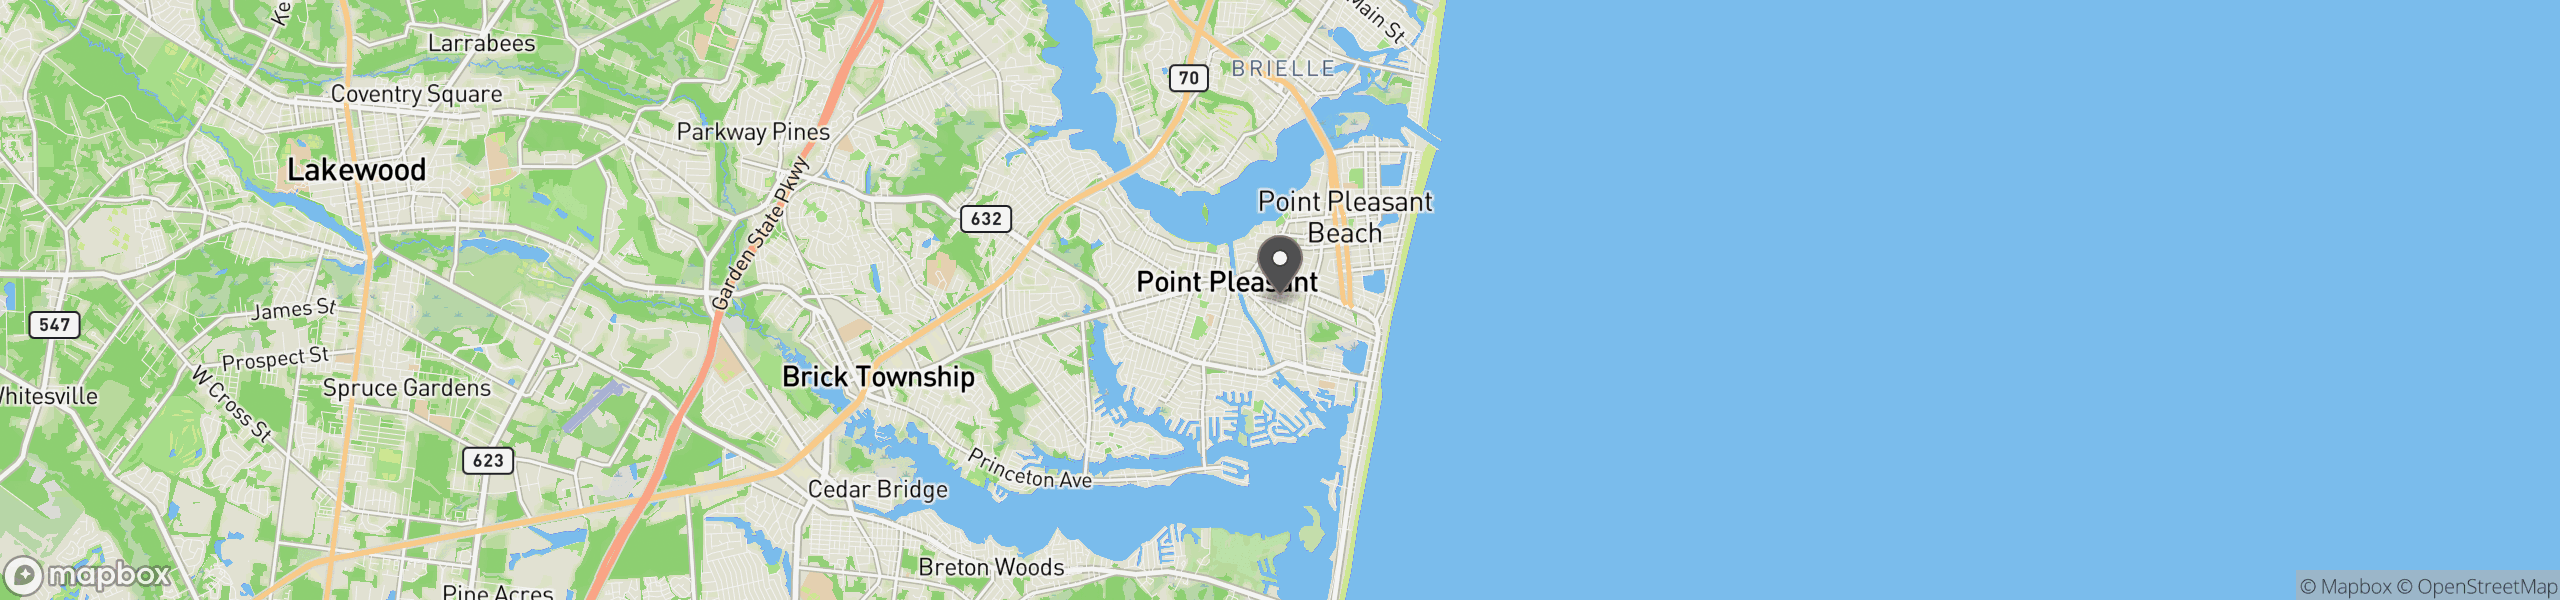 Point Pleasant Beach, NJ